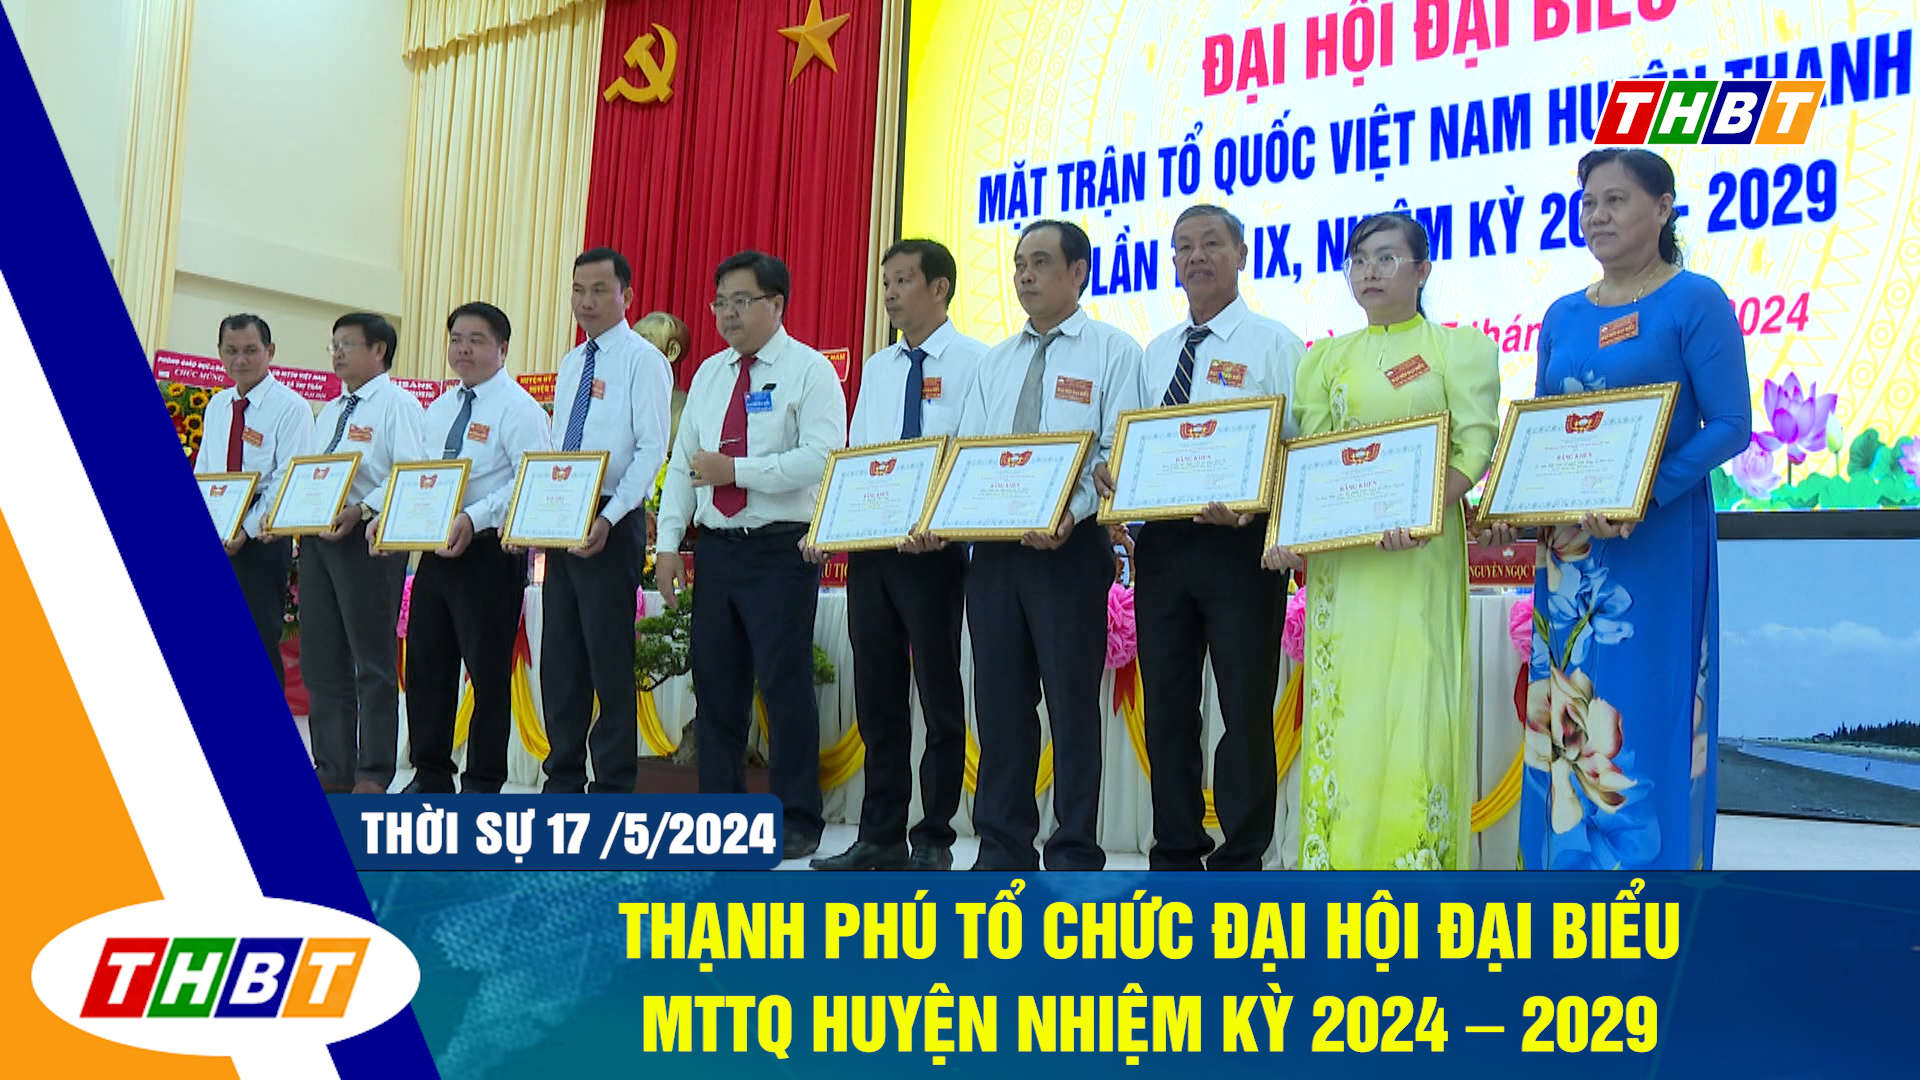 Thạnh Phú tổ chức Đại hội đại biểu MTTQ huyện nhiệm kỳ 2024 – 2029